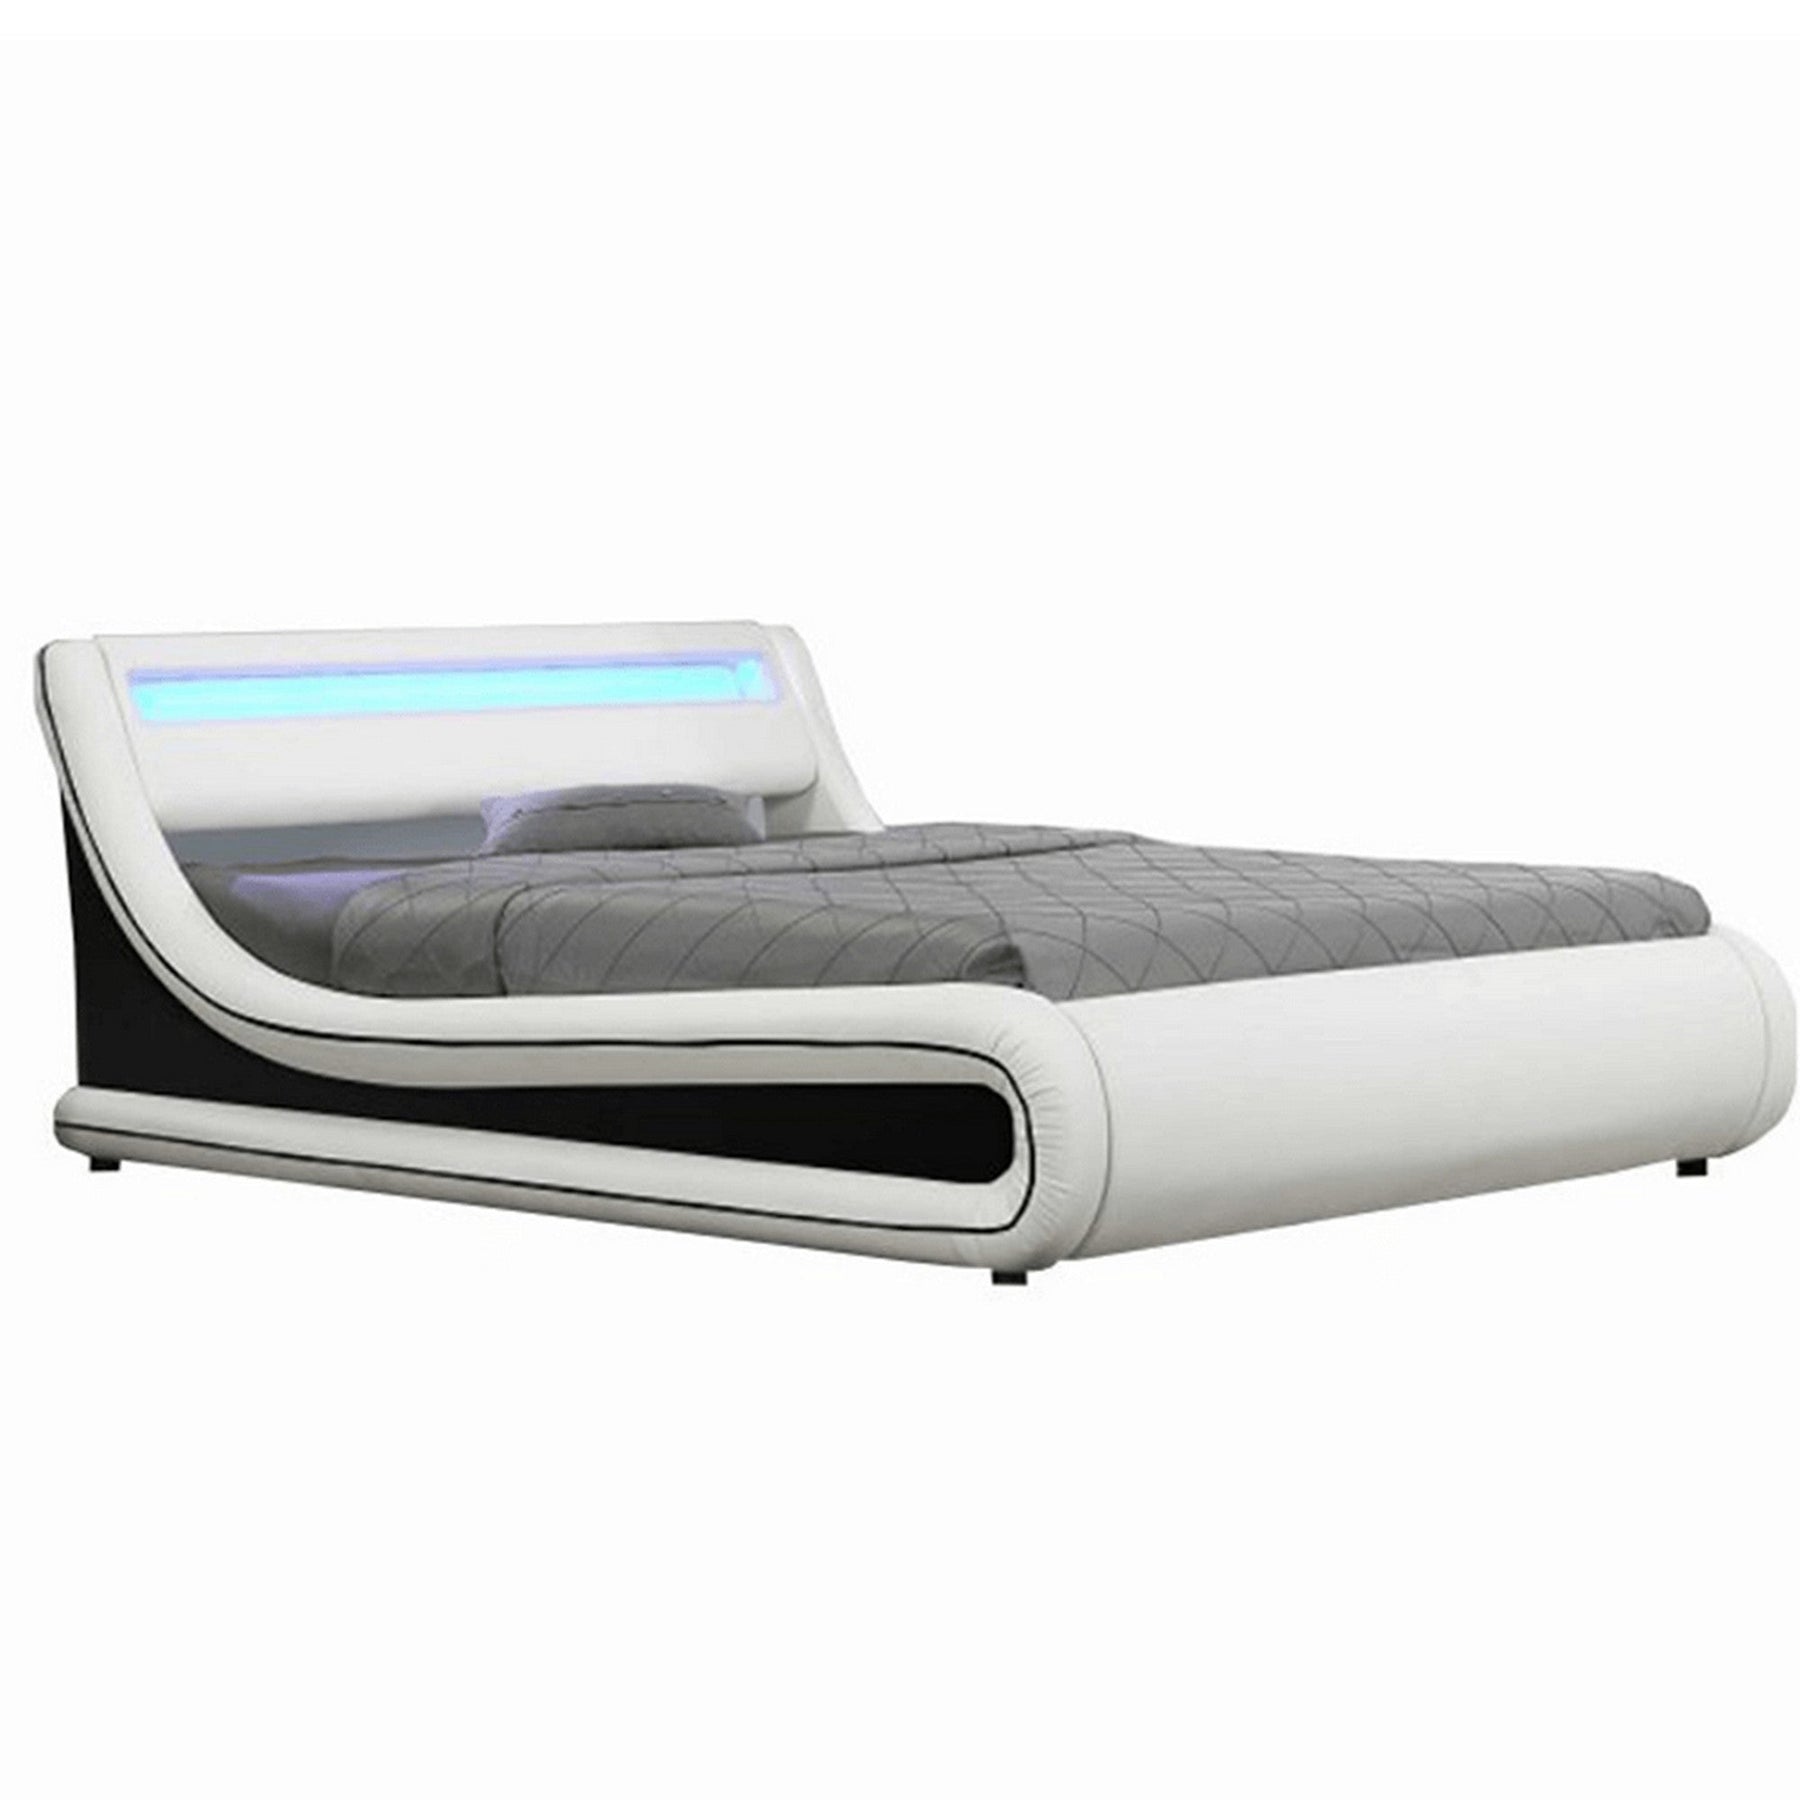 Pat dormitor MANILA NEW, piele ecologica, alb/negru, 180x200 cm, cu iluminare LED RGB, somiera lamelara reglabila si lada de depozitare, fara saltea